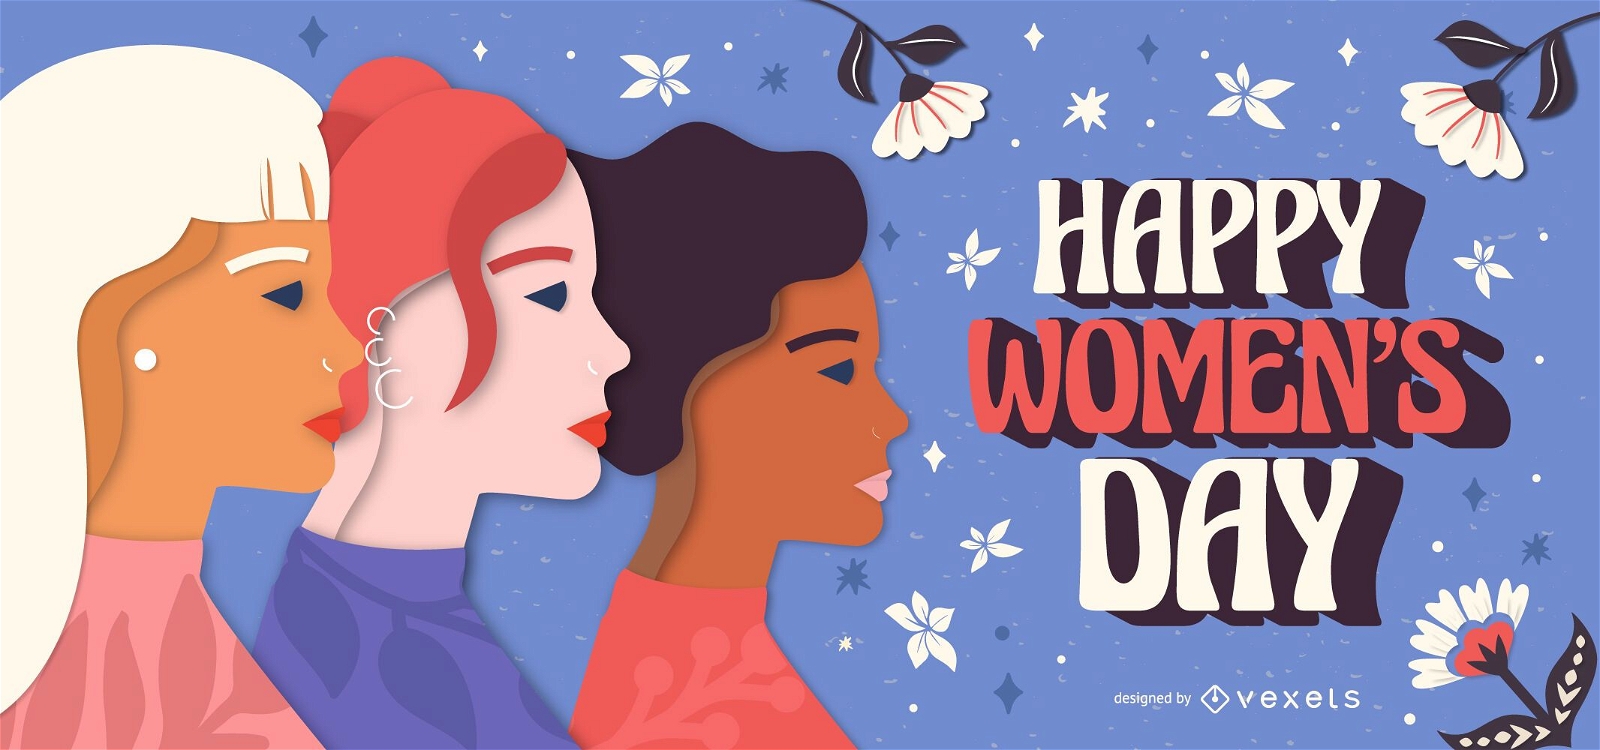 Women's Day illustration